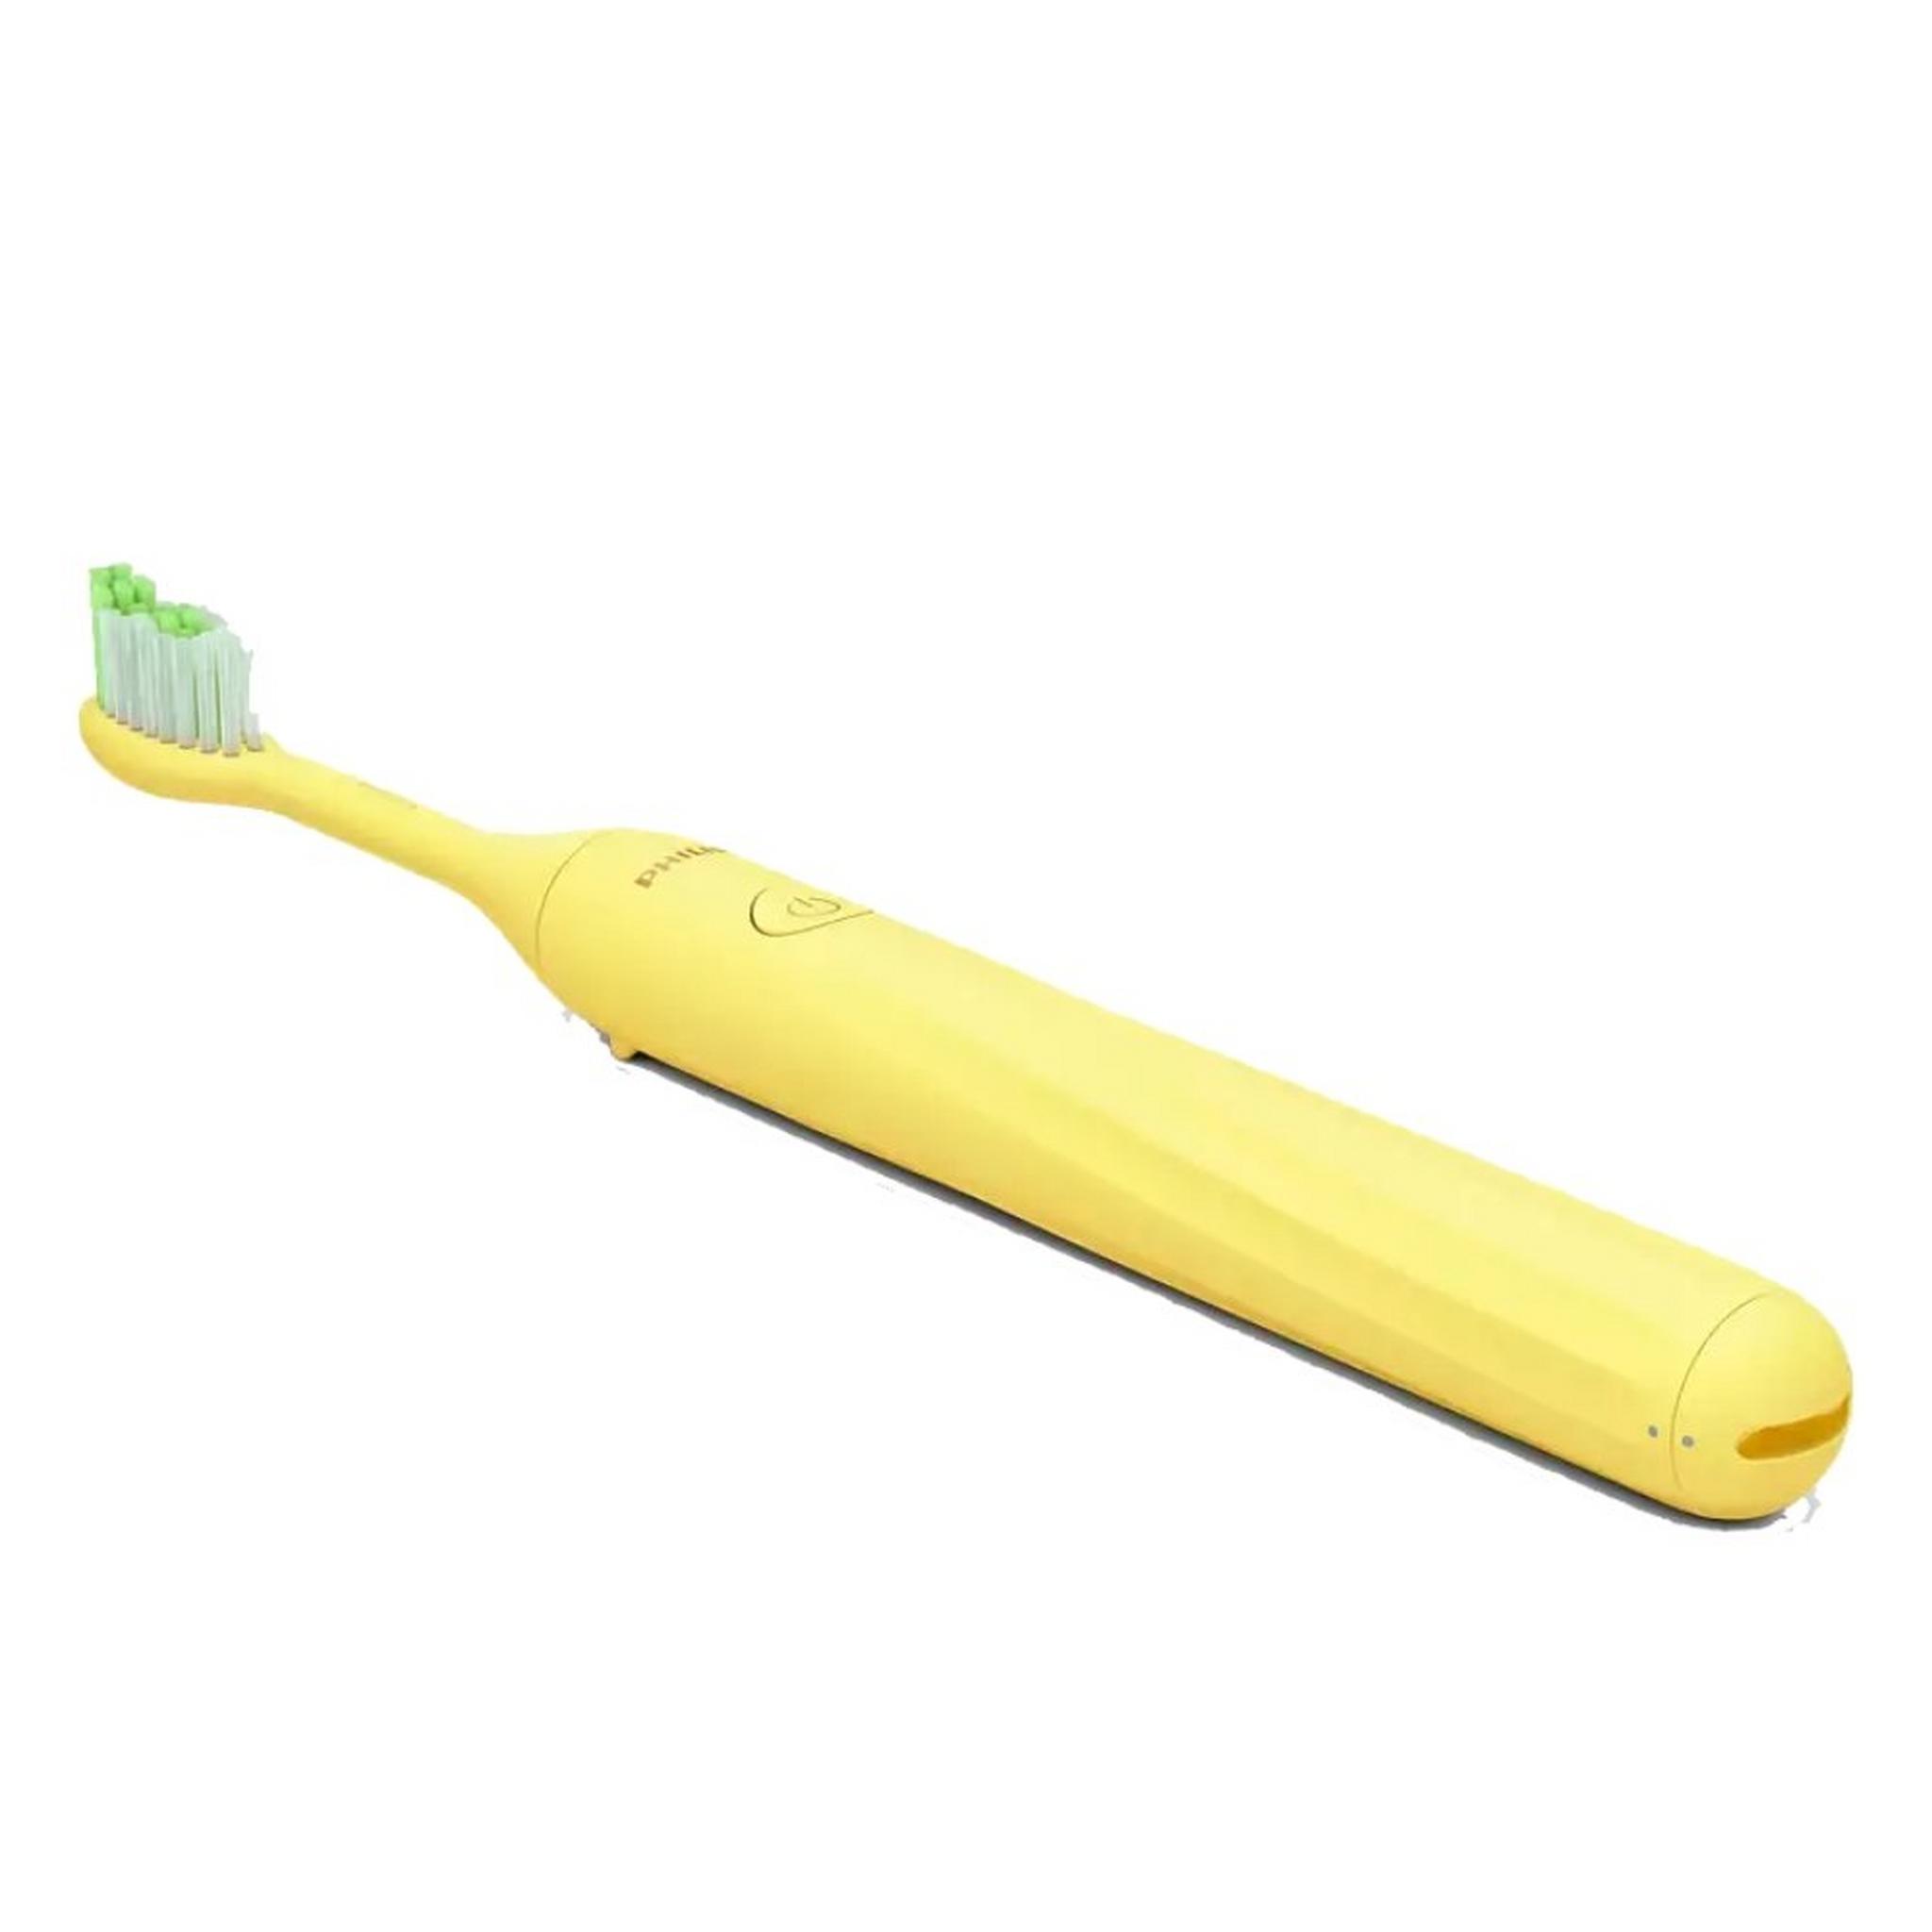 Philips One Battery Toothbrush - Mango Yellow